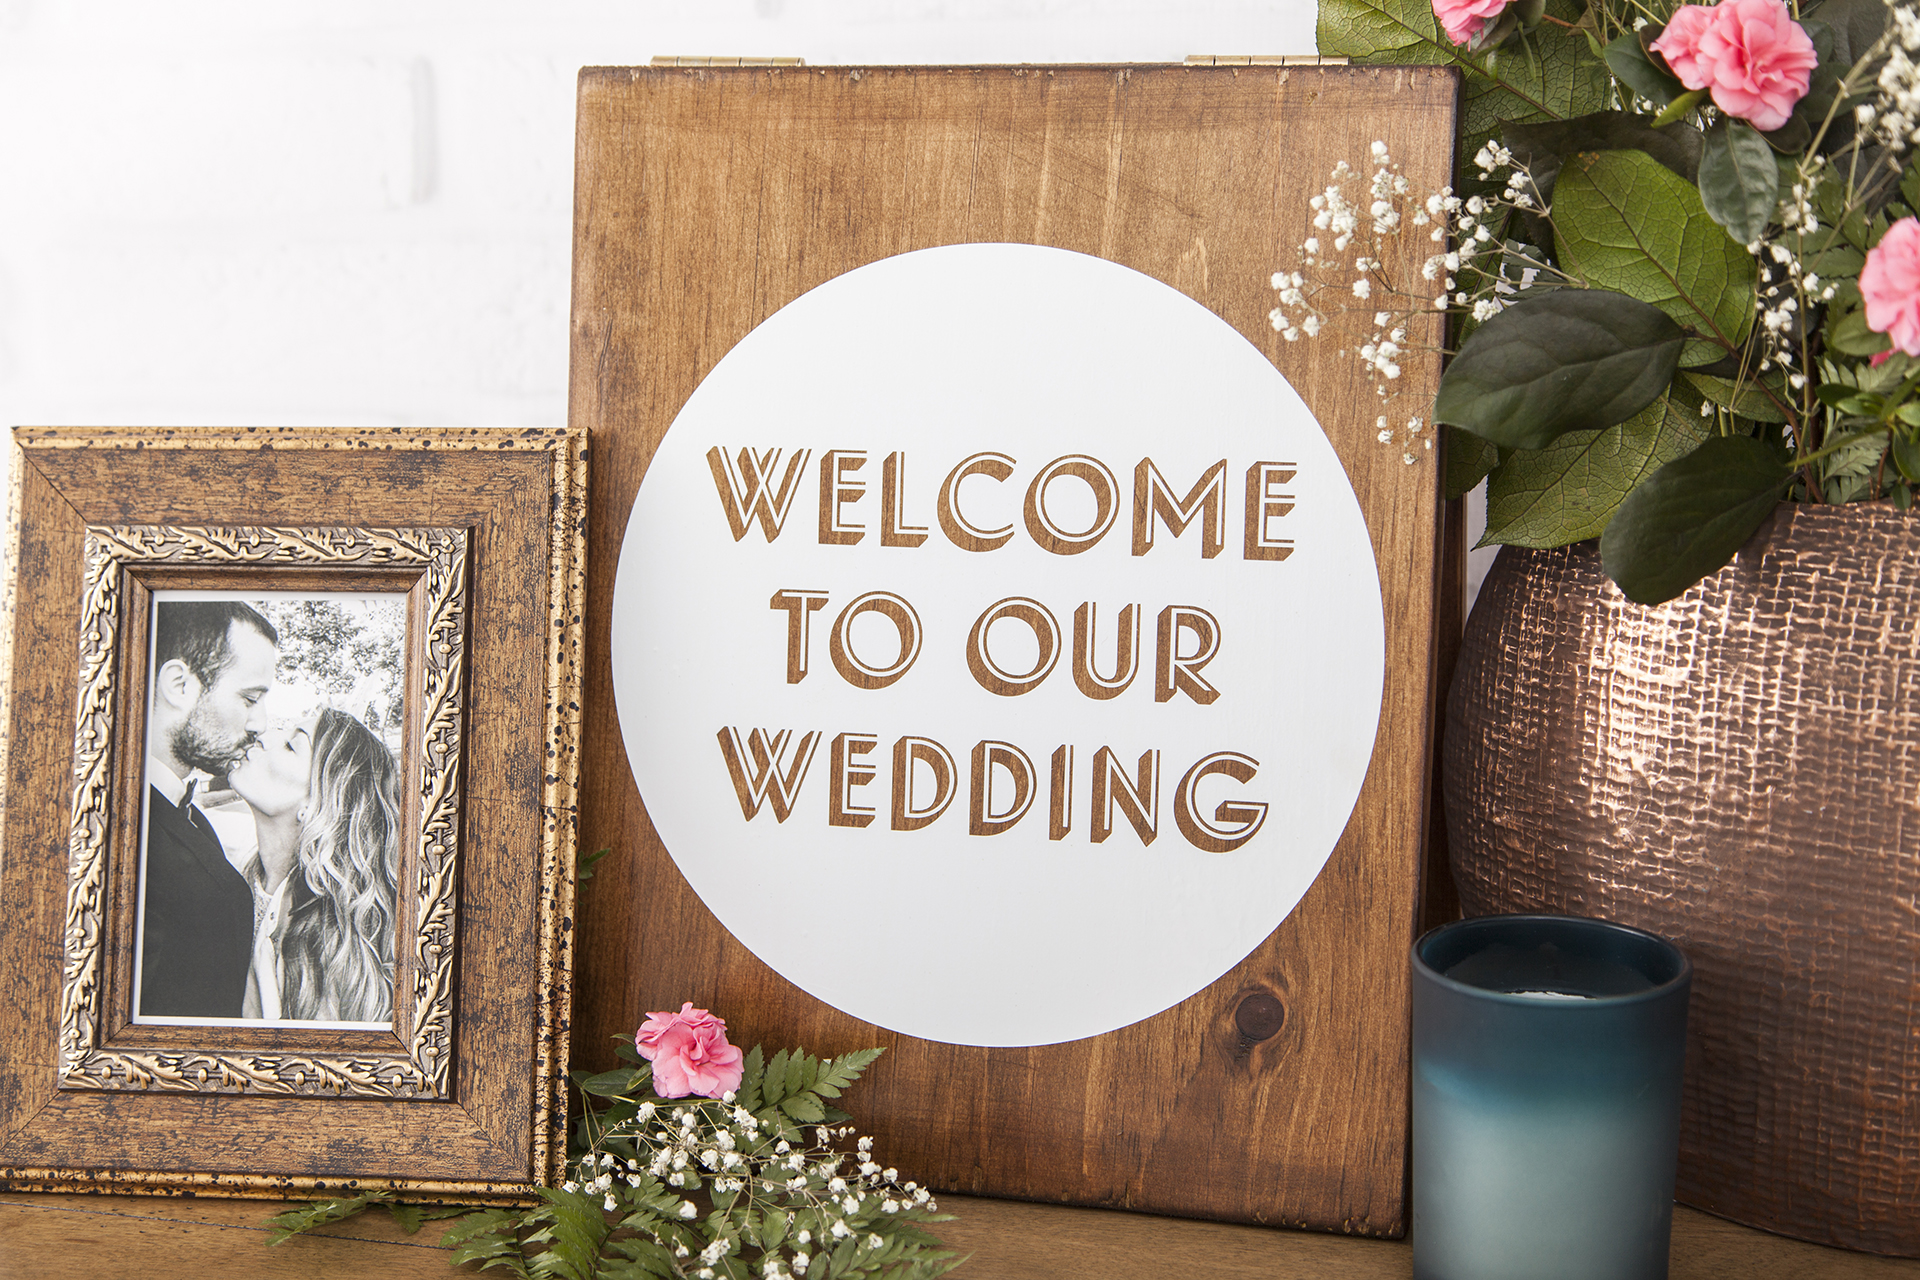 Panneau en bois indiquant « Bienvenue à notre mariage » en anglais à l'intérieur d'un cercle blanc